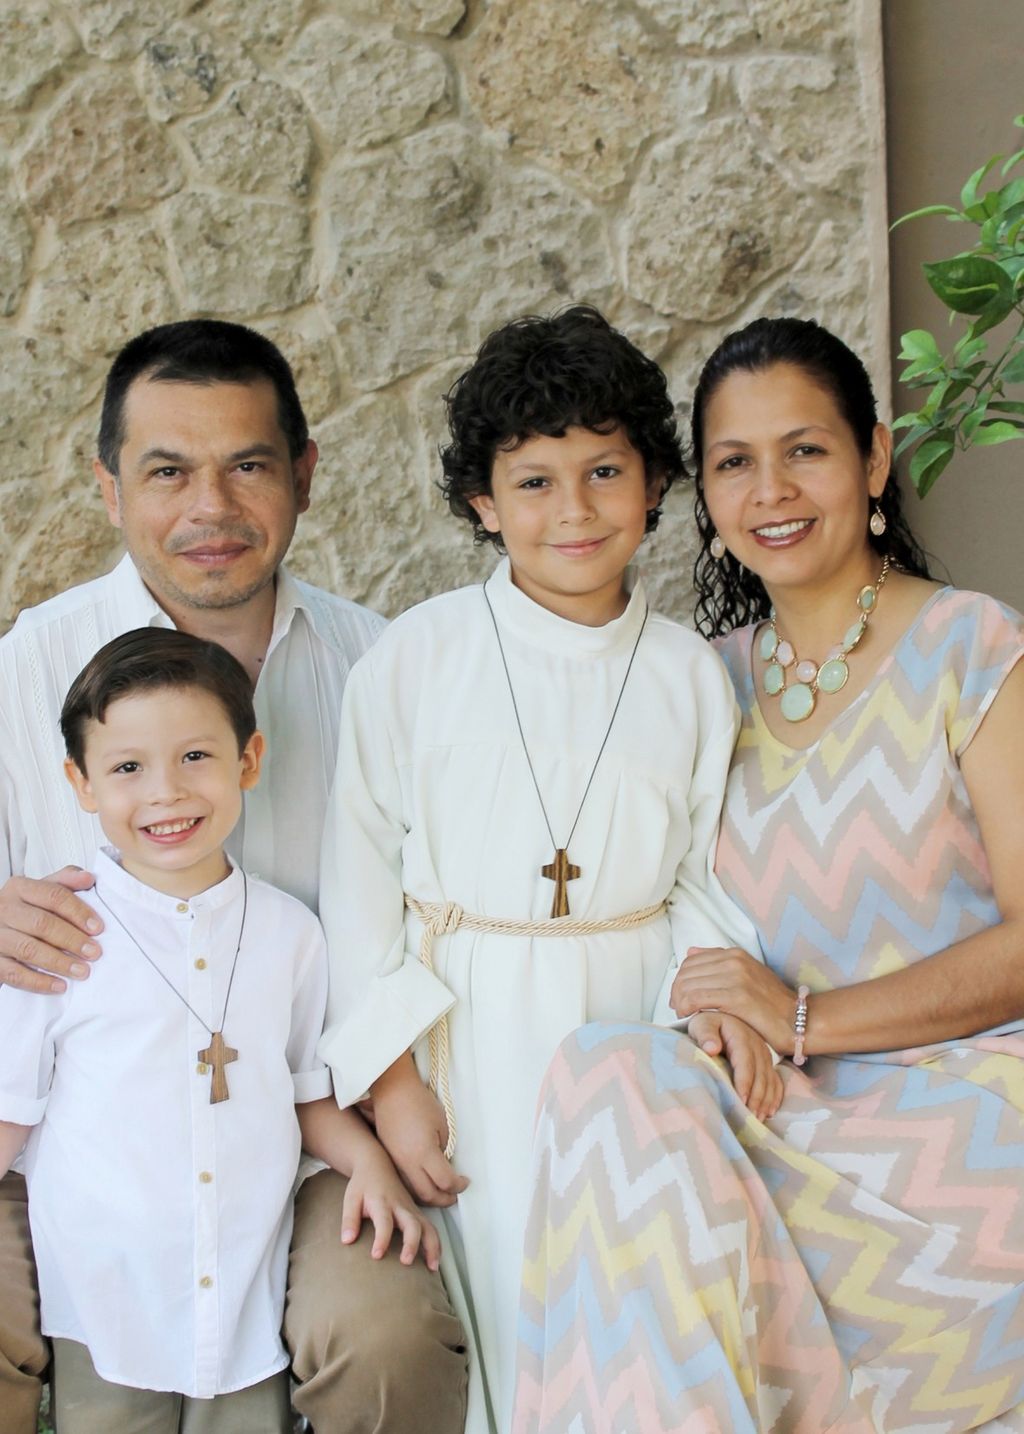   Aarón Aguirre acompañado de sus papás y su hermano el día de su Primera Comunión.
